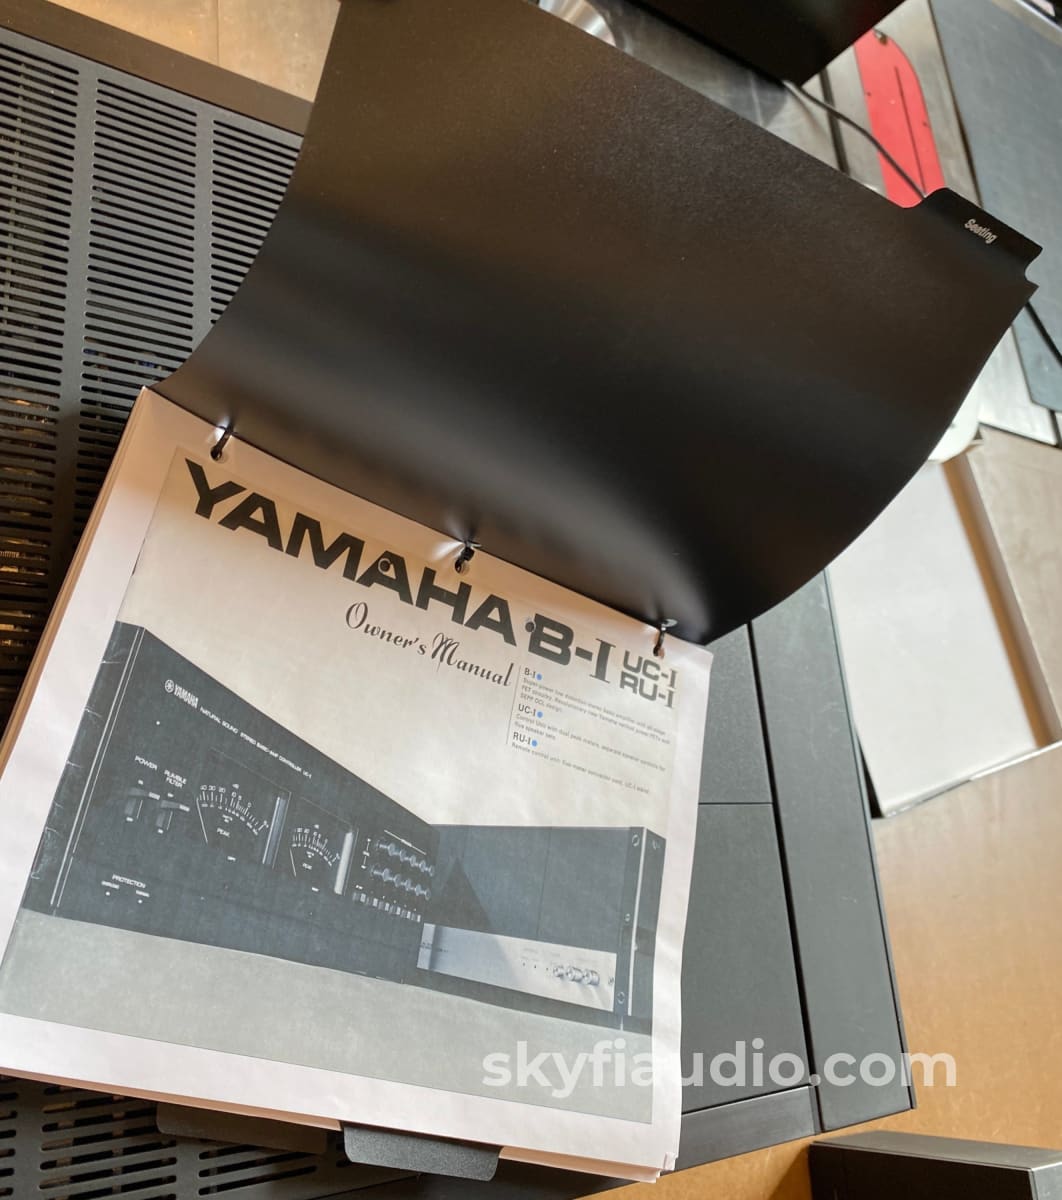 Yamaha B-1 - Rare Vfet Monster Amplifier With Vu Meter Module